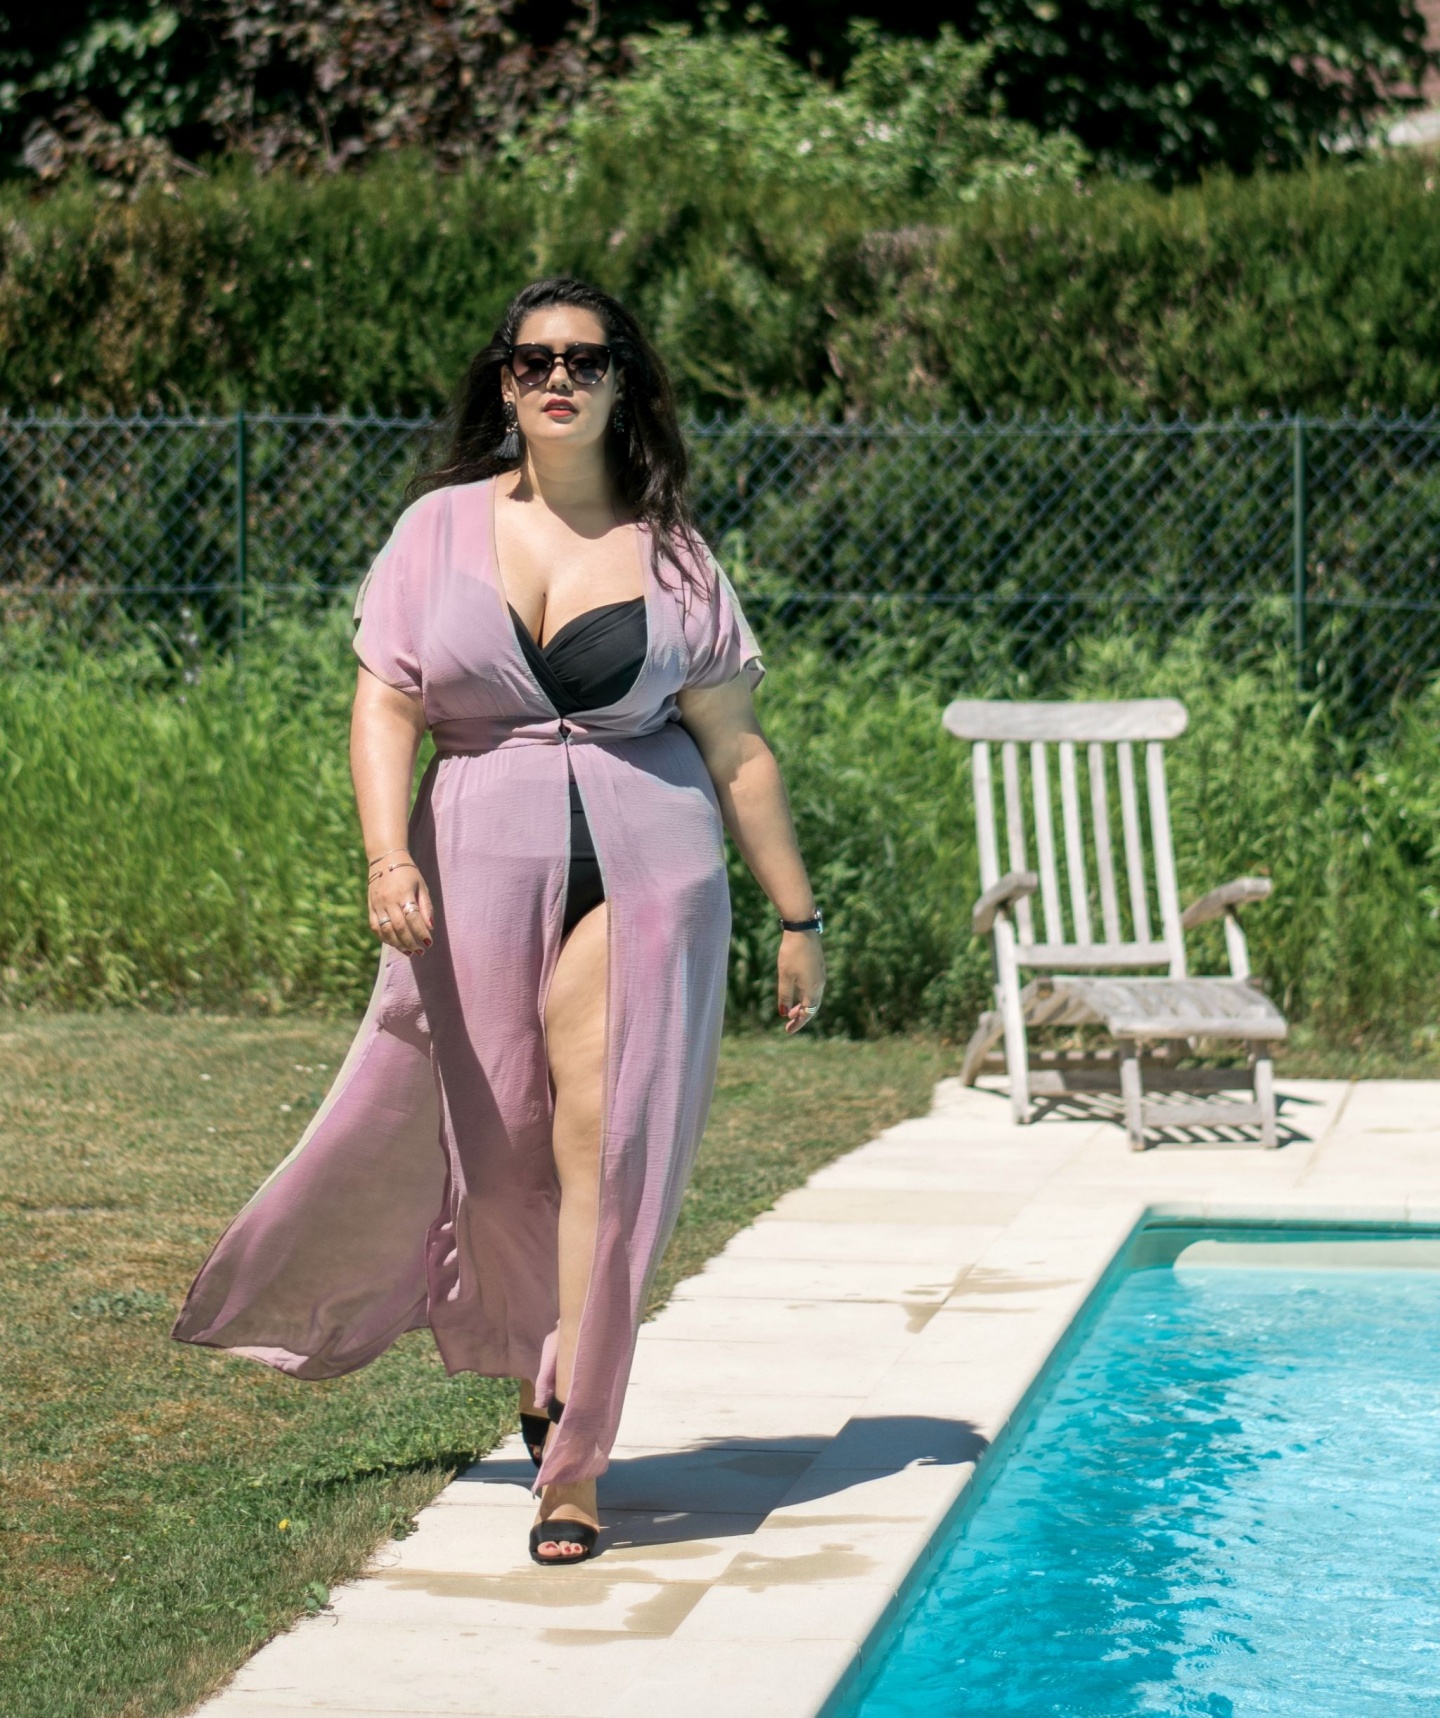 Maillot de bain grande taille - Je suis une rebelle blogueuse mode grande taille et lifestyle 